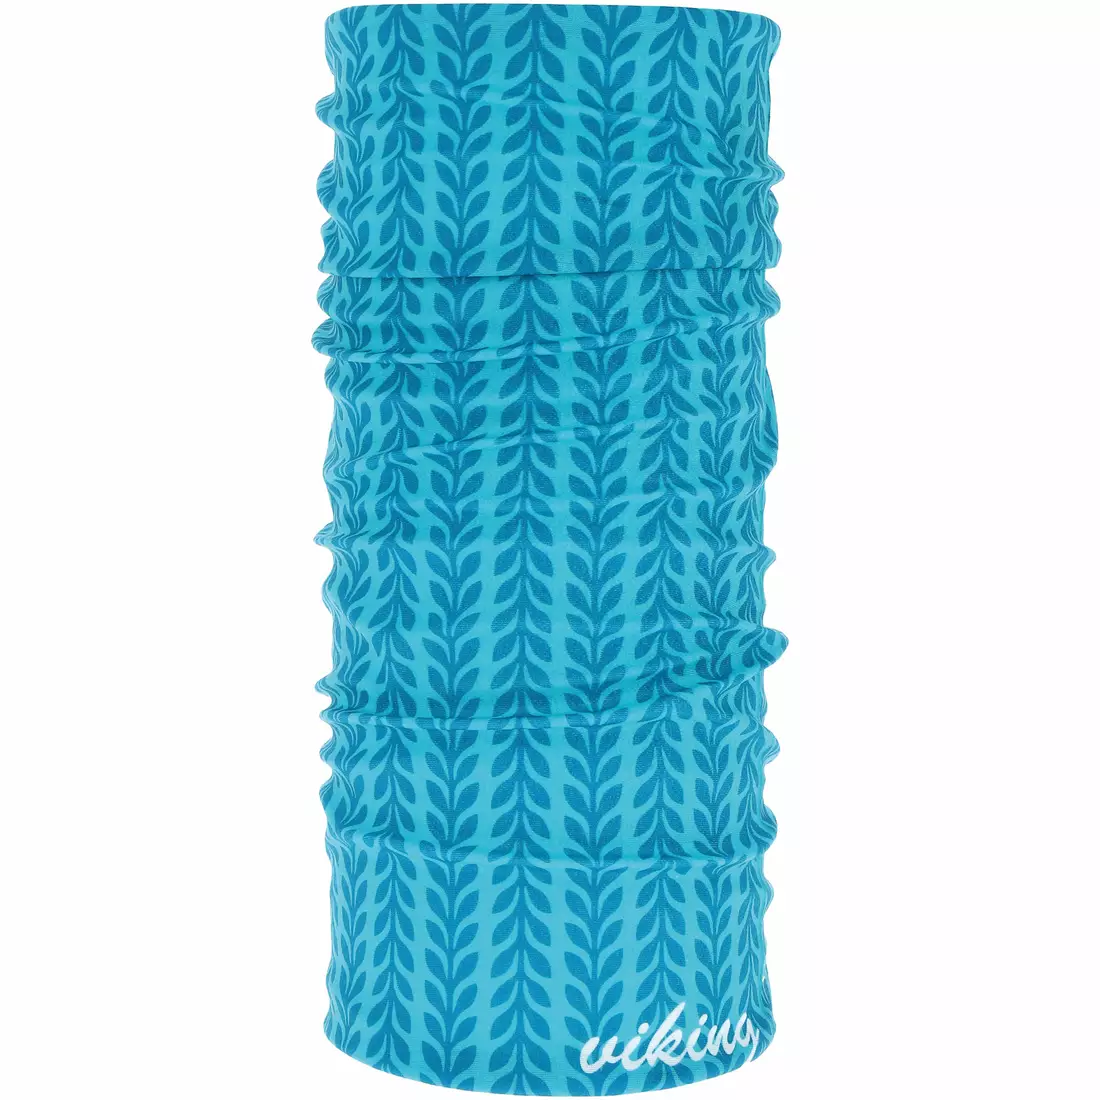 VIKING multifunkční šátek POLARTEC OUTSIDE blue 420/23/7764/70